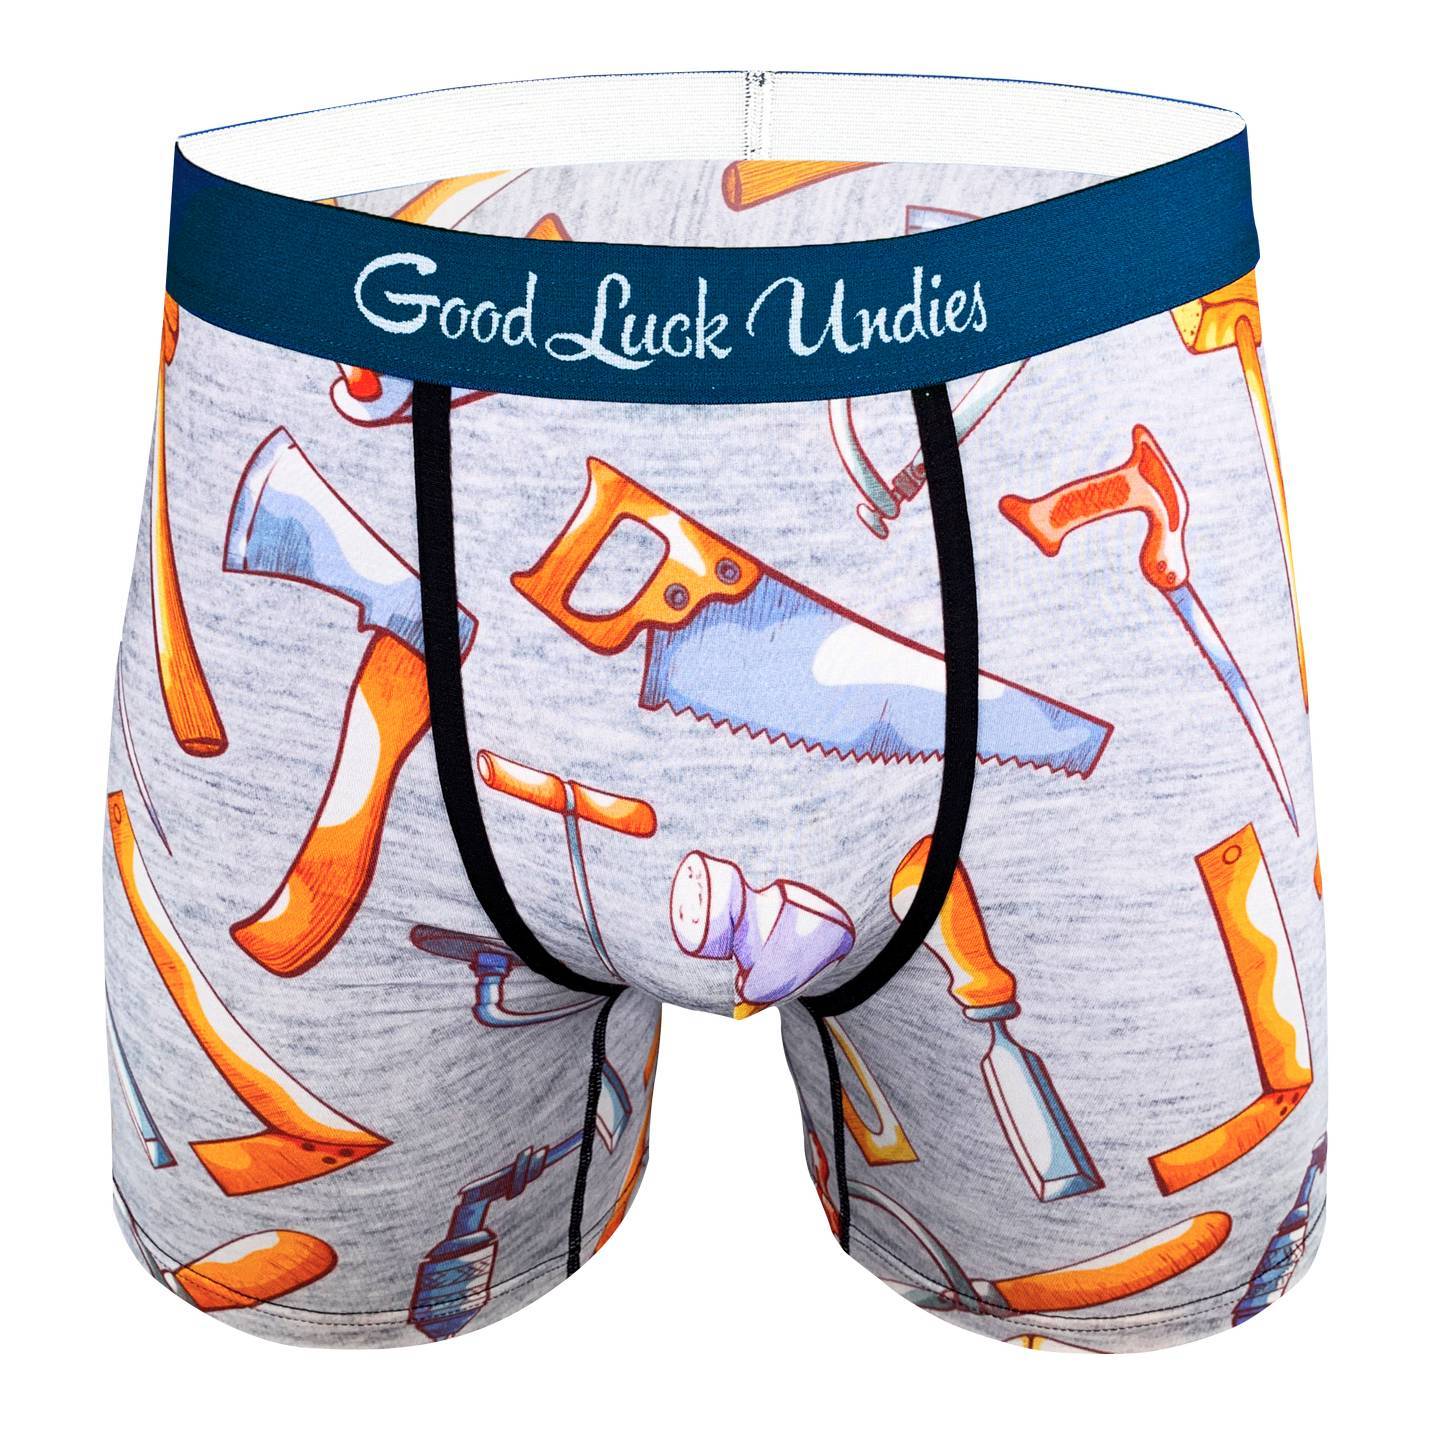 Good Luck Undies Cheese Boxer Brief Food Underwear No Chafe Anti Roll Band  LG